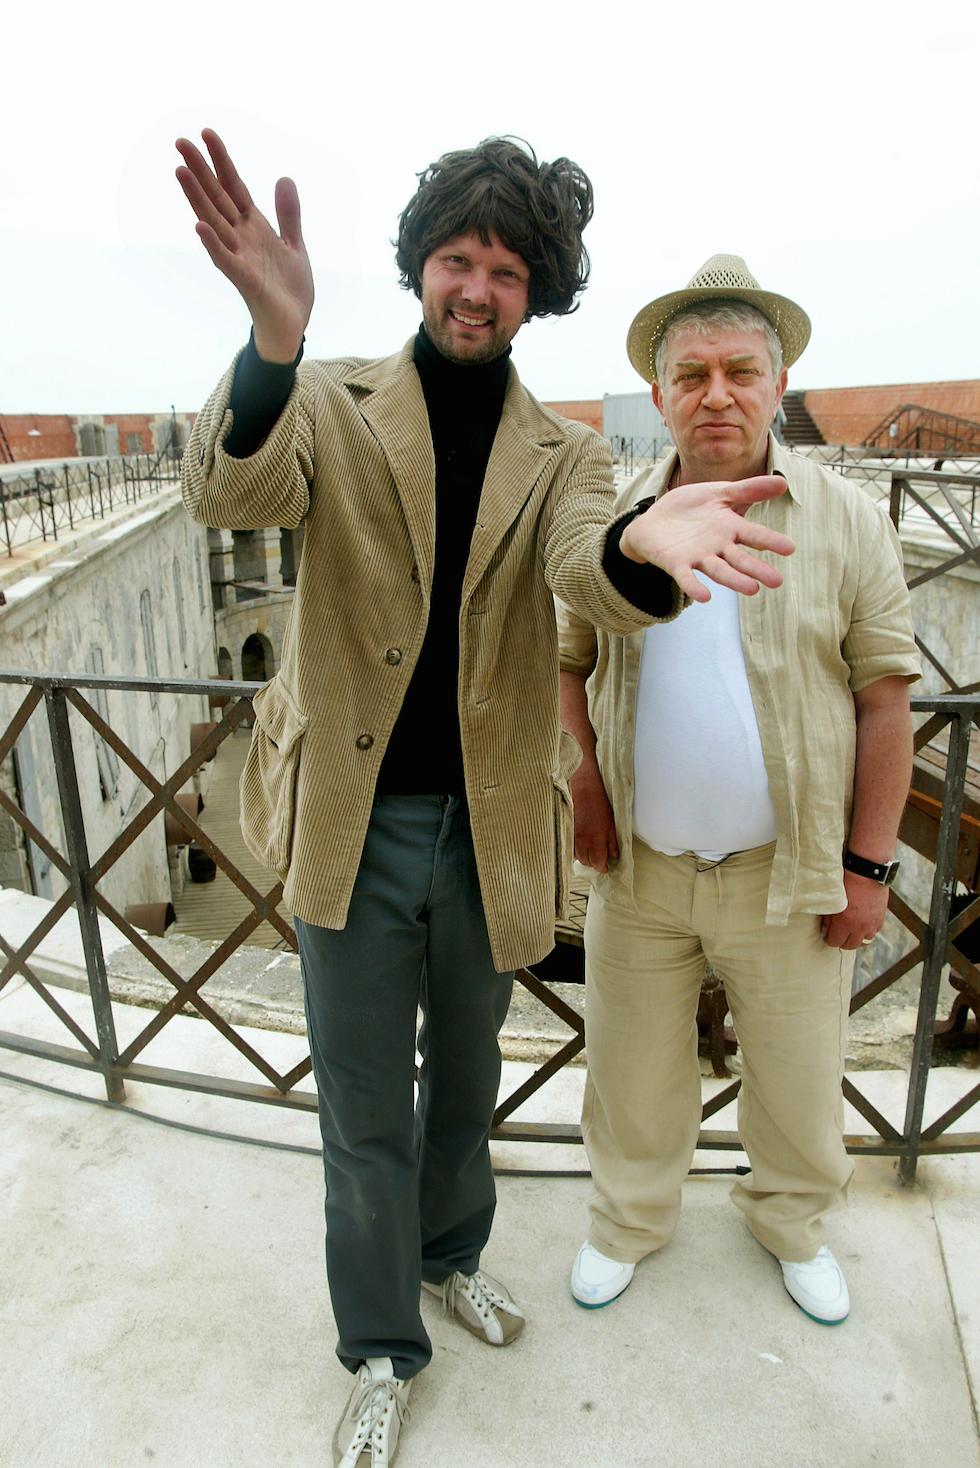 Sasha Mesić var sidekick till Felix Herngrens karaktär Dan Bäckman. Här under inspelningen av Fångarna på Fortet 2004.